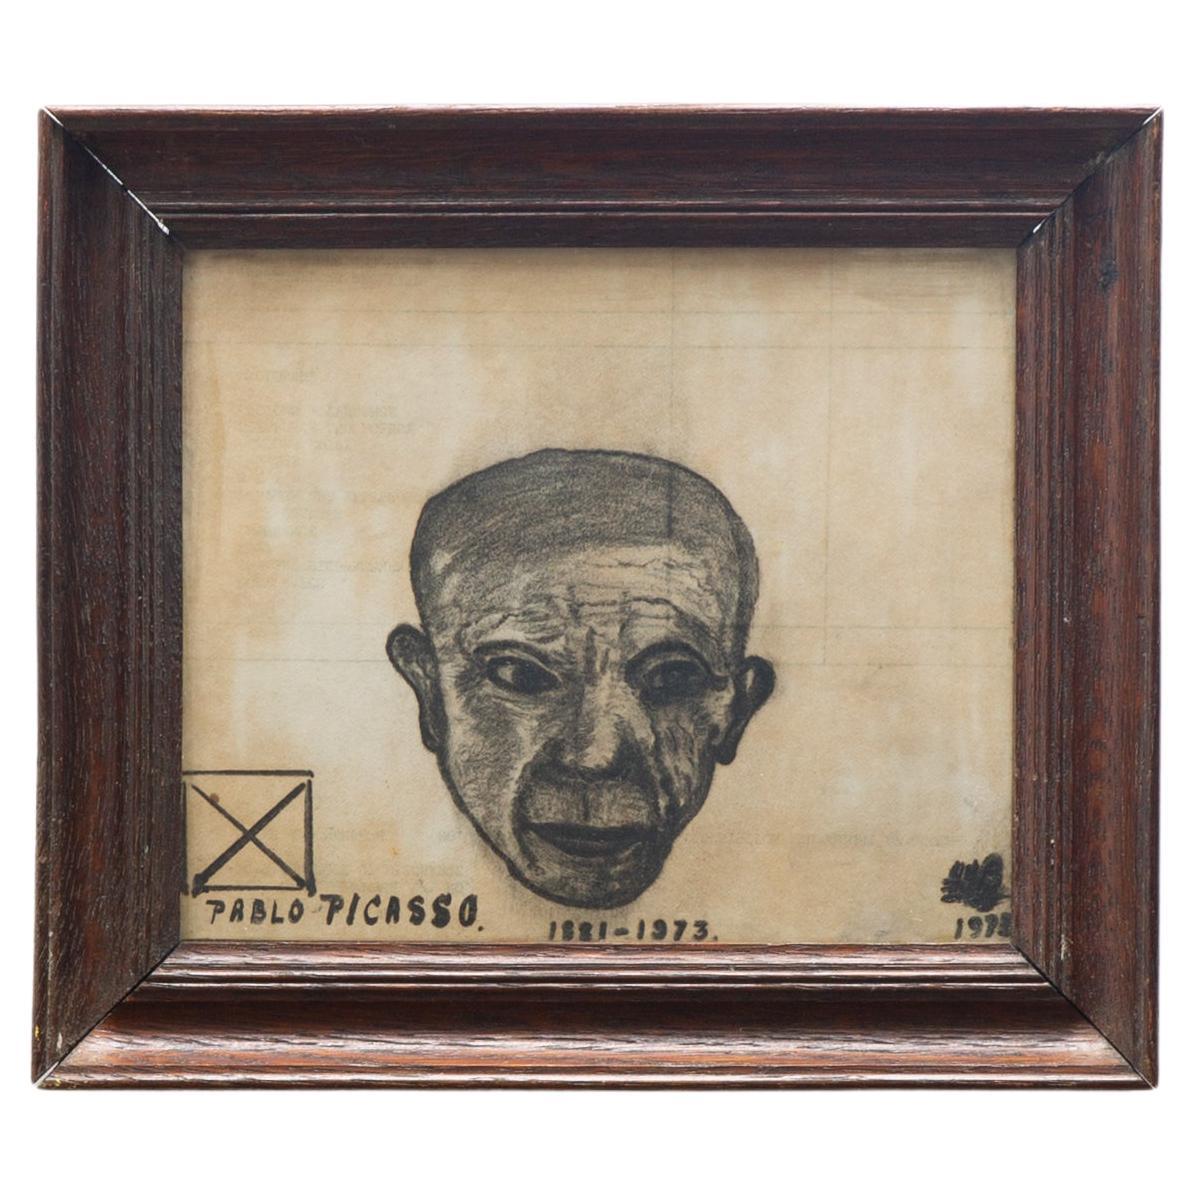 Pablo Picasso, Porträt, Kohlezeichnung, 1970er-Jahre